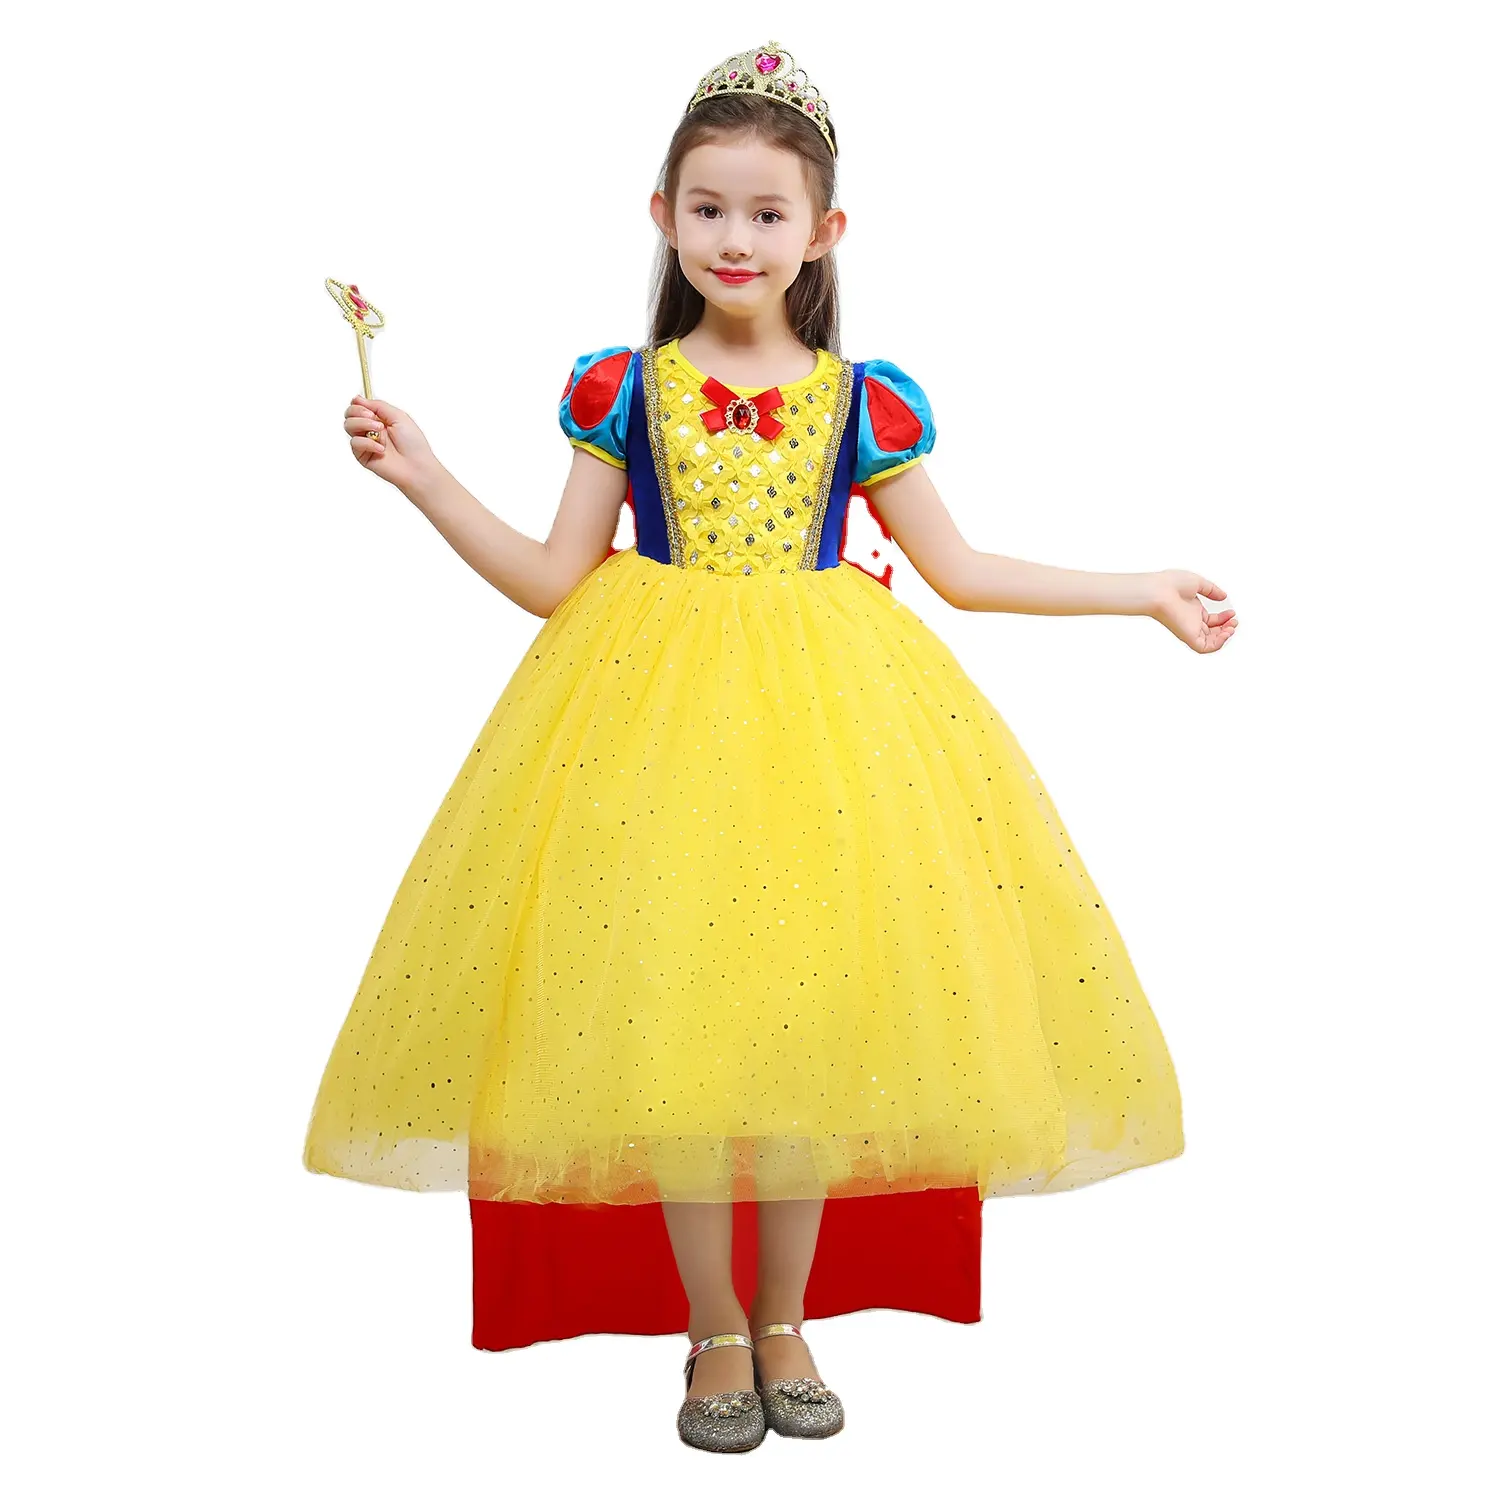 Snow White Disny Dress Pesta Putri, Kostum Putri Disny untuk Pesta untuk Hadiah Ulang Tahun Anak Perempuan